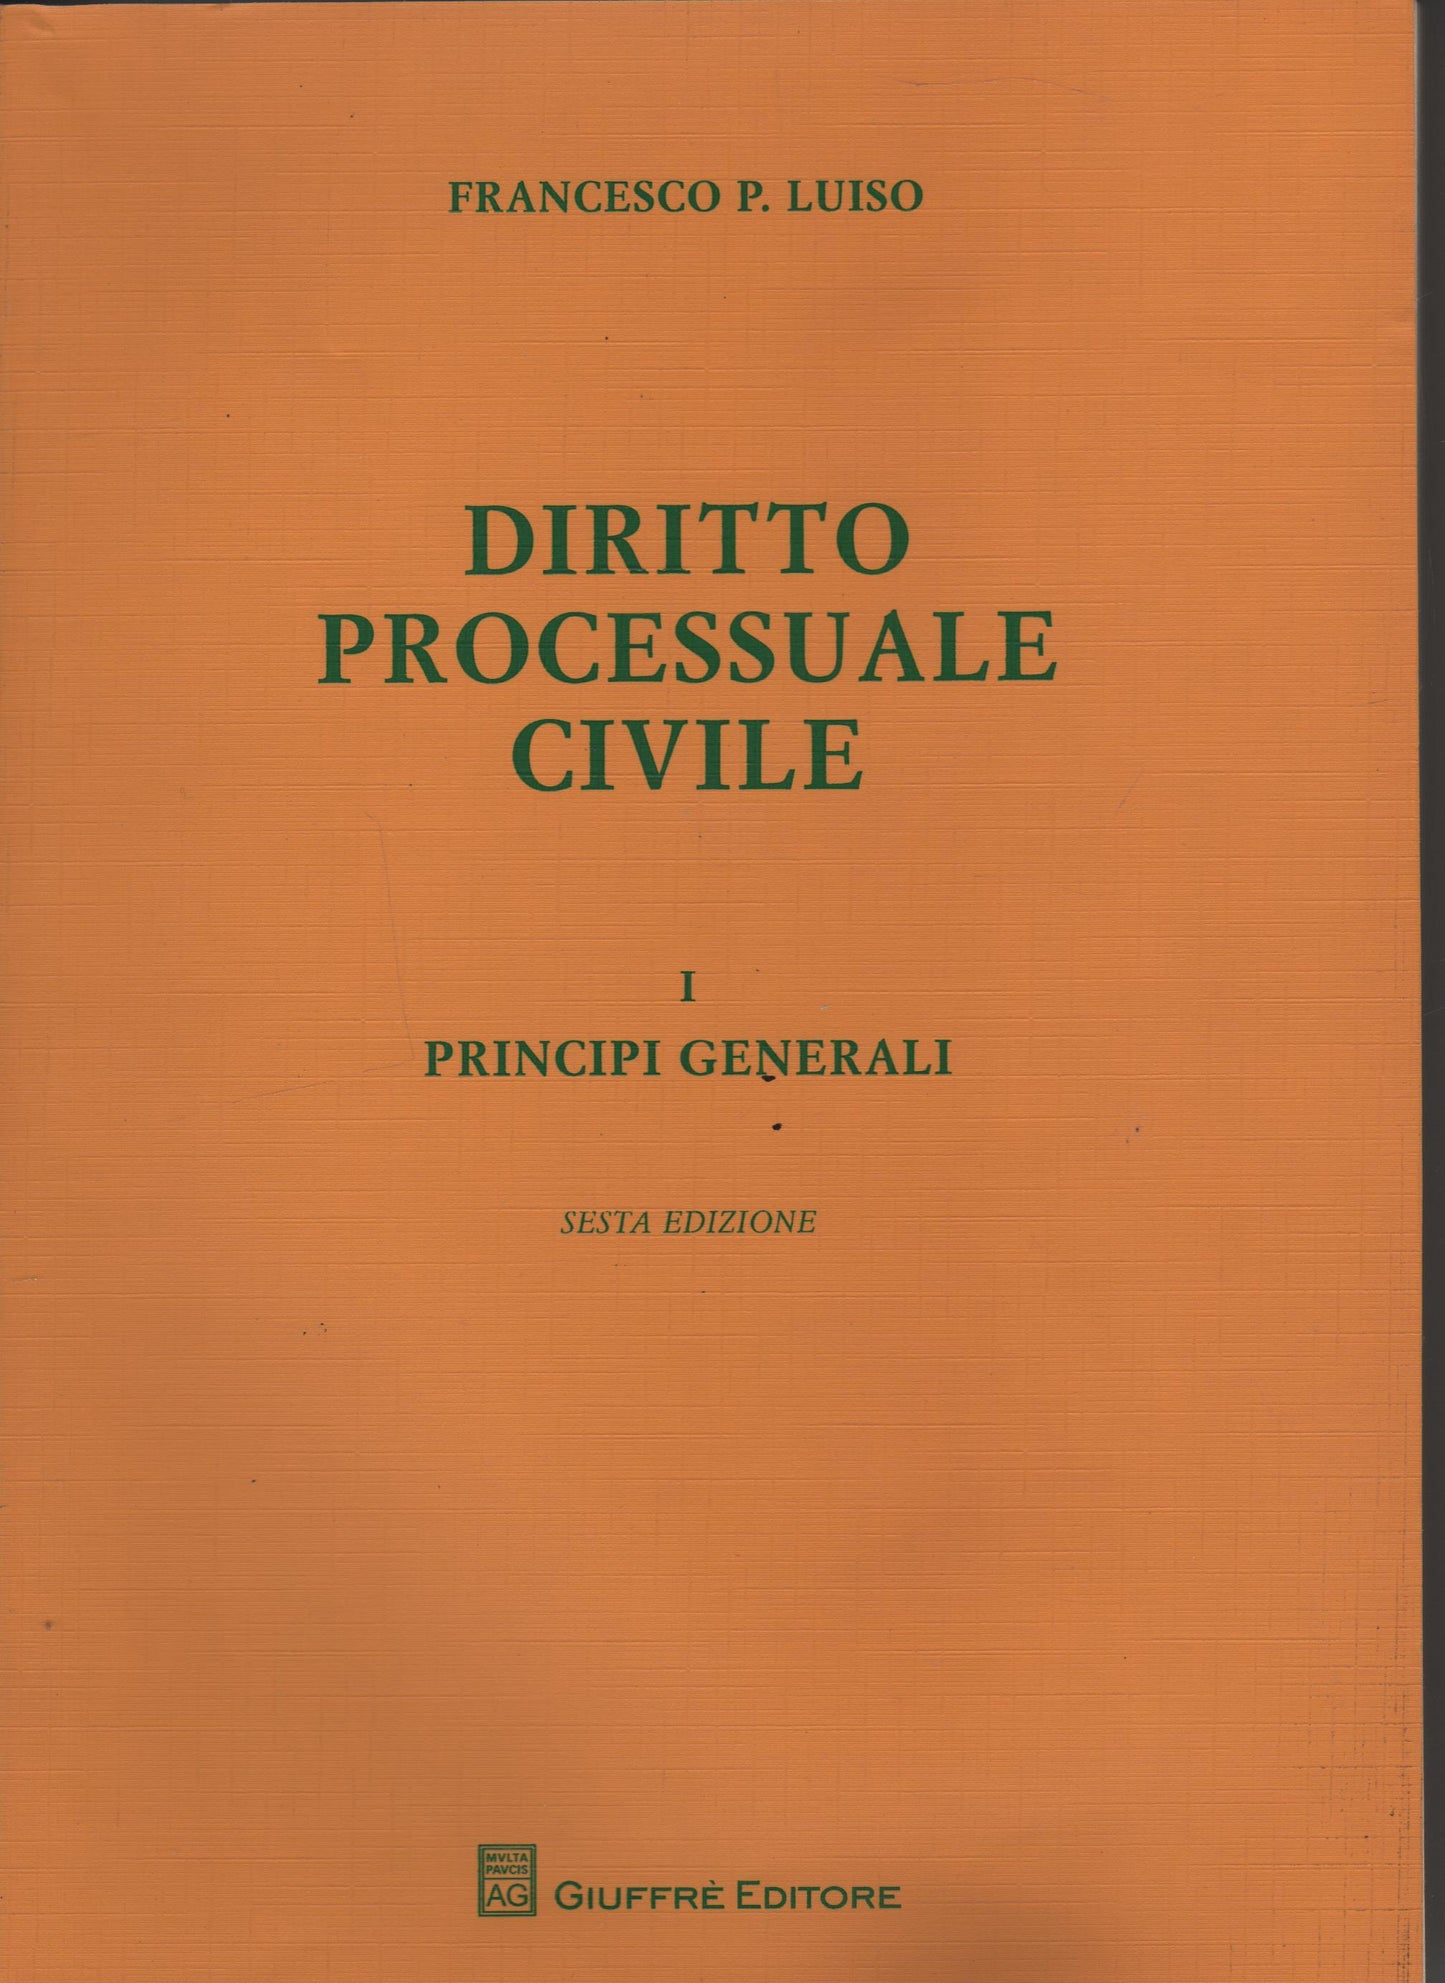 Diritto processuale civile: 1